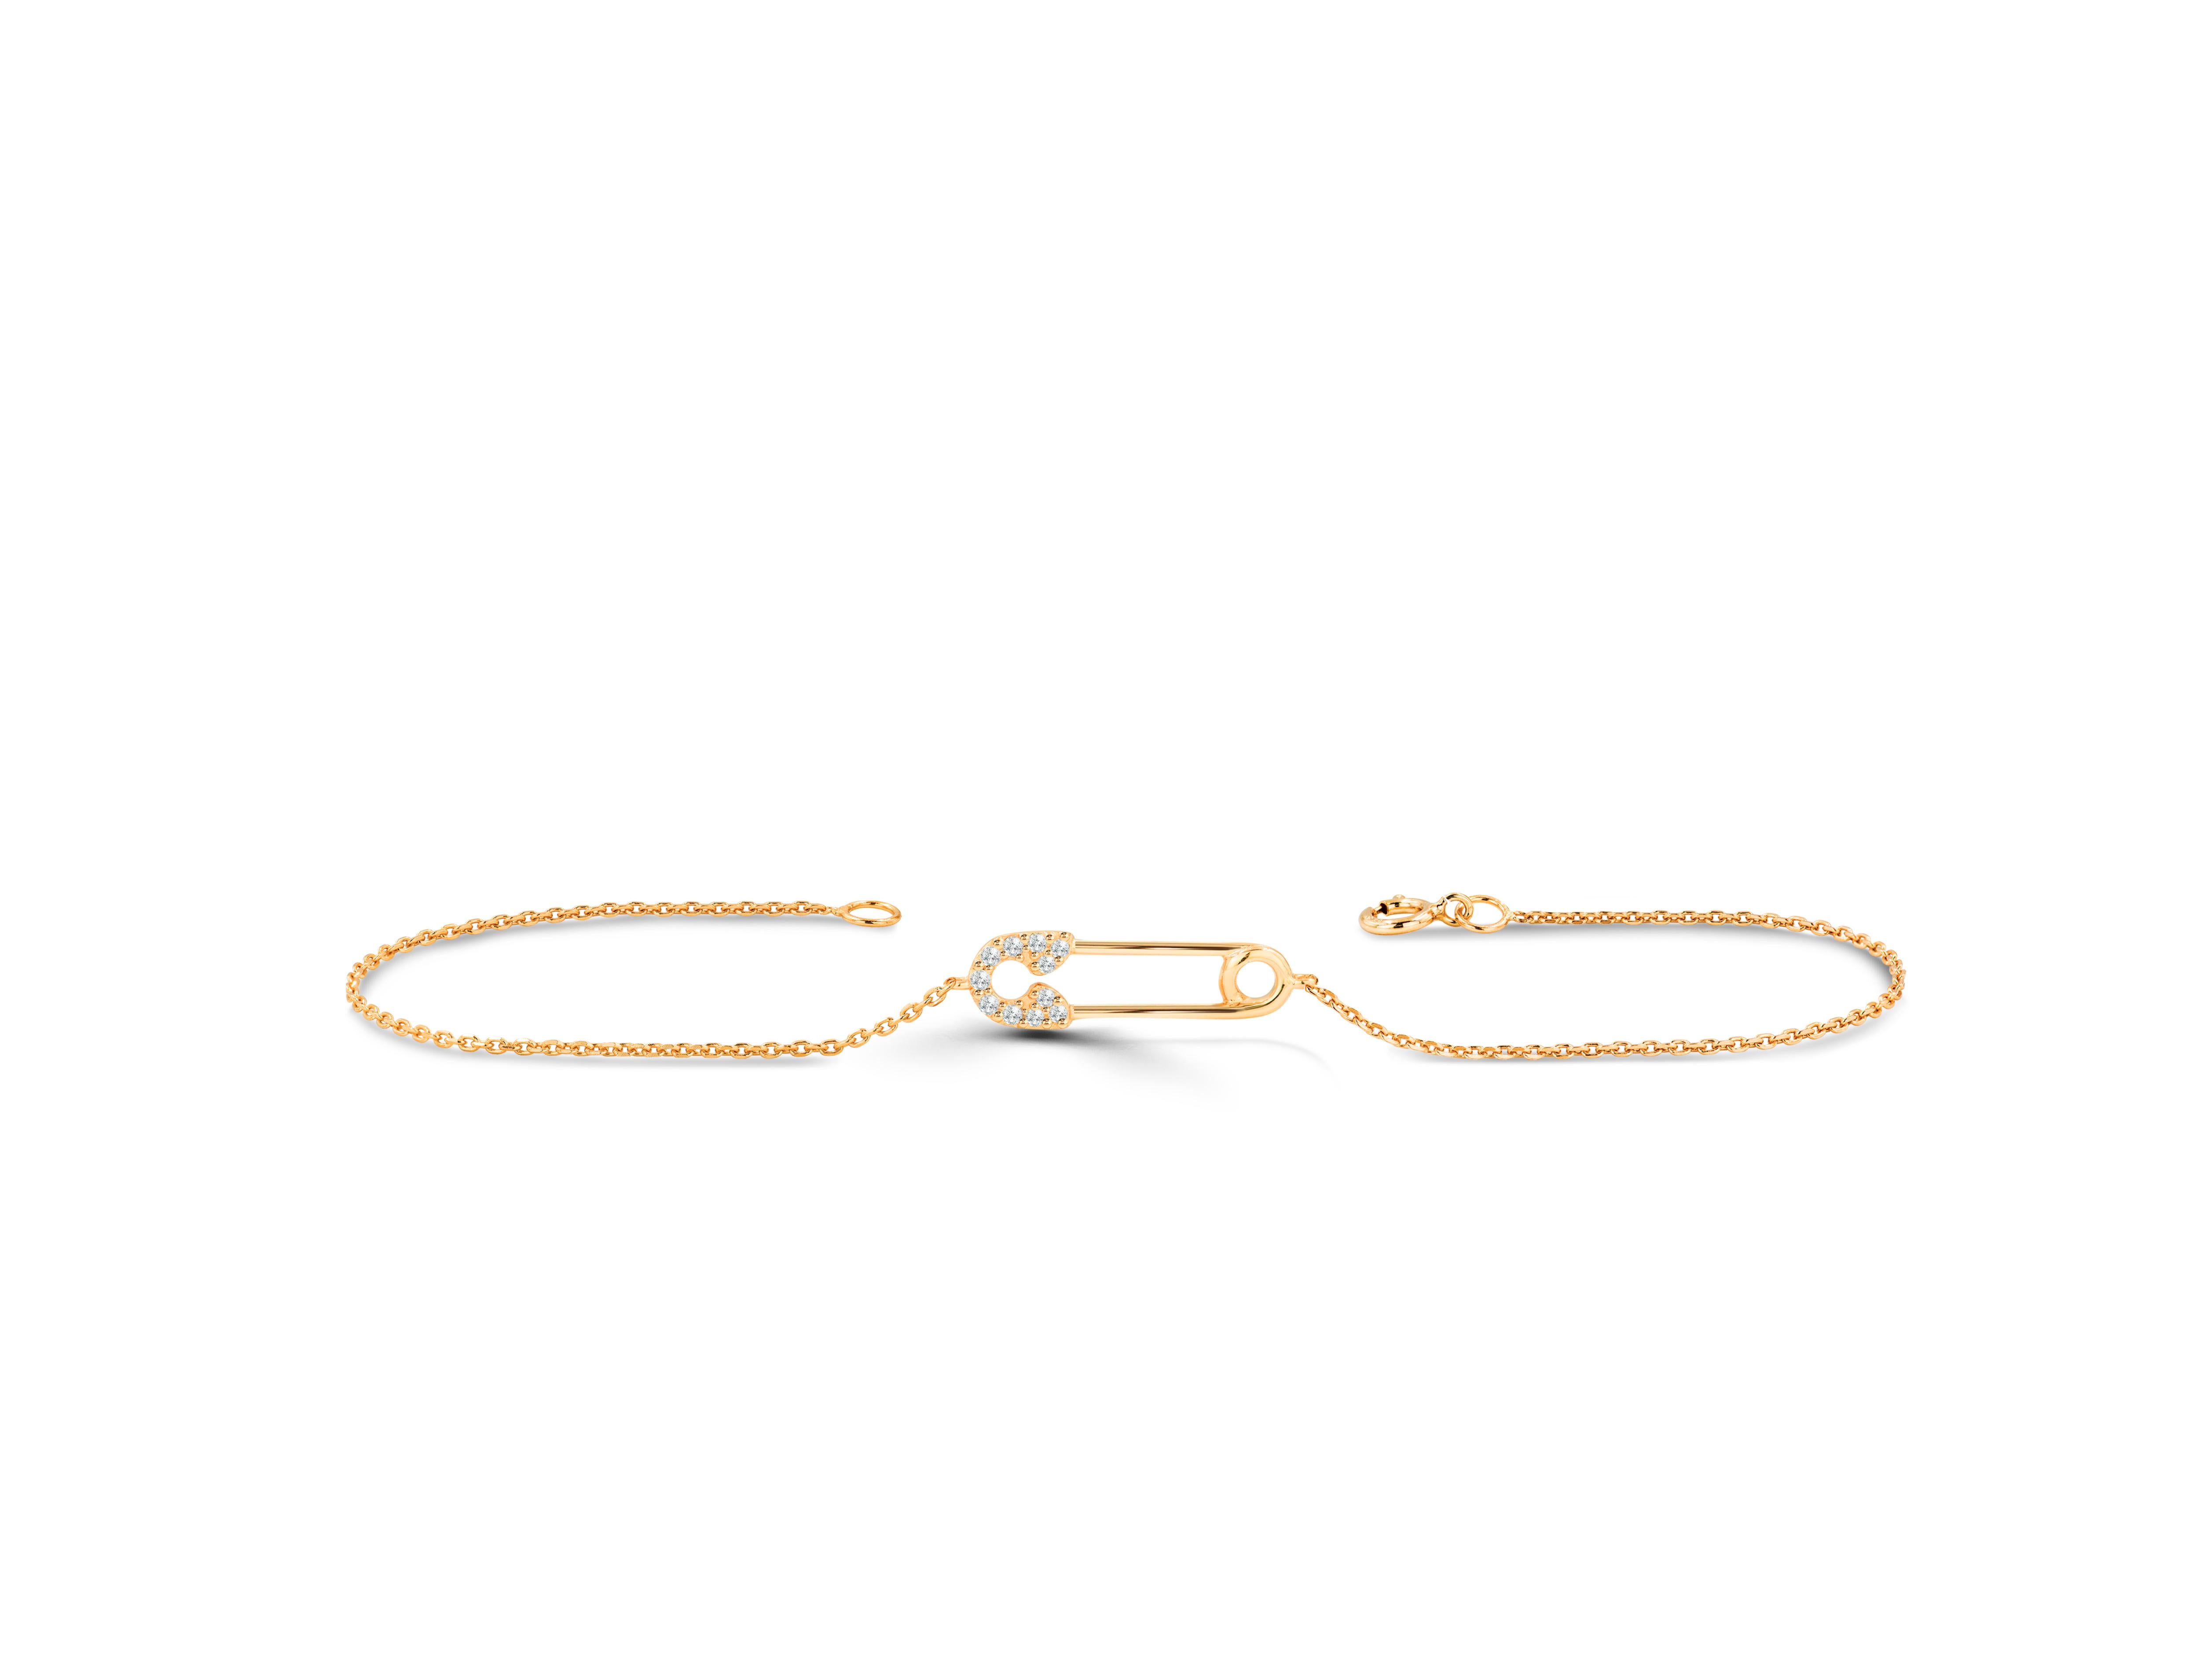 Beau et élégant, ce bracelet à épingle de sûreté est fabriqué en or pur et se compose de diamants véritables et naturels. Ce bracelet minimaliste donne un aspect sophistiqué et élégant à votre main. Le bracelet peut être personnalisé dans la couleur